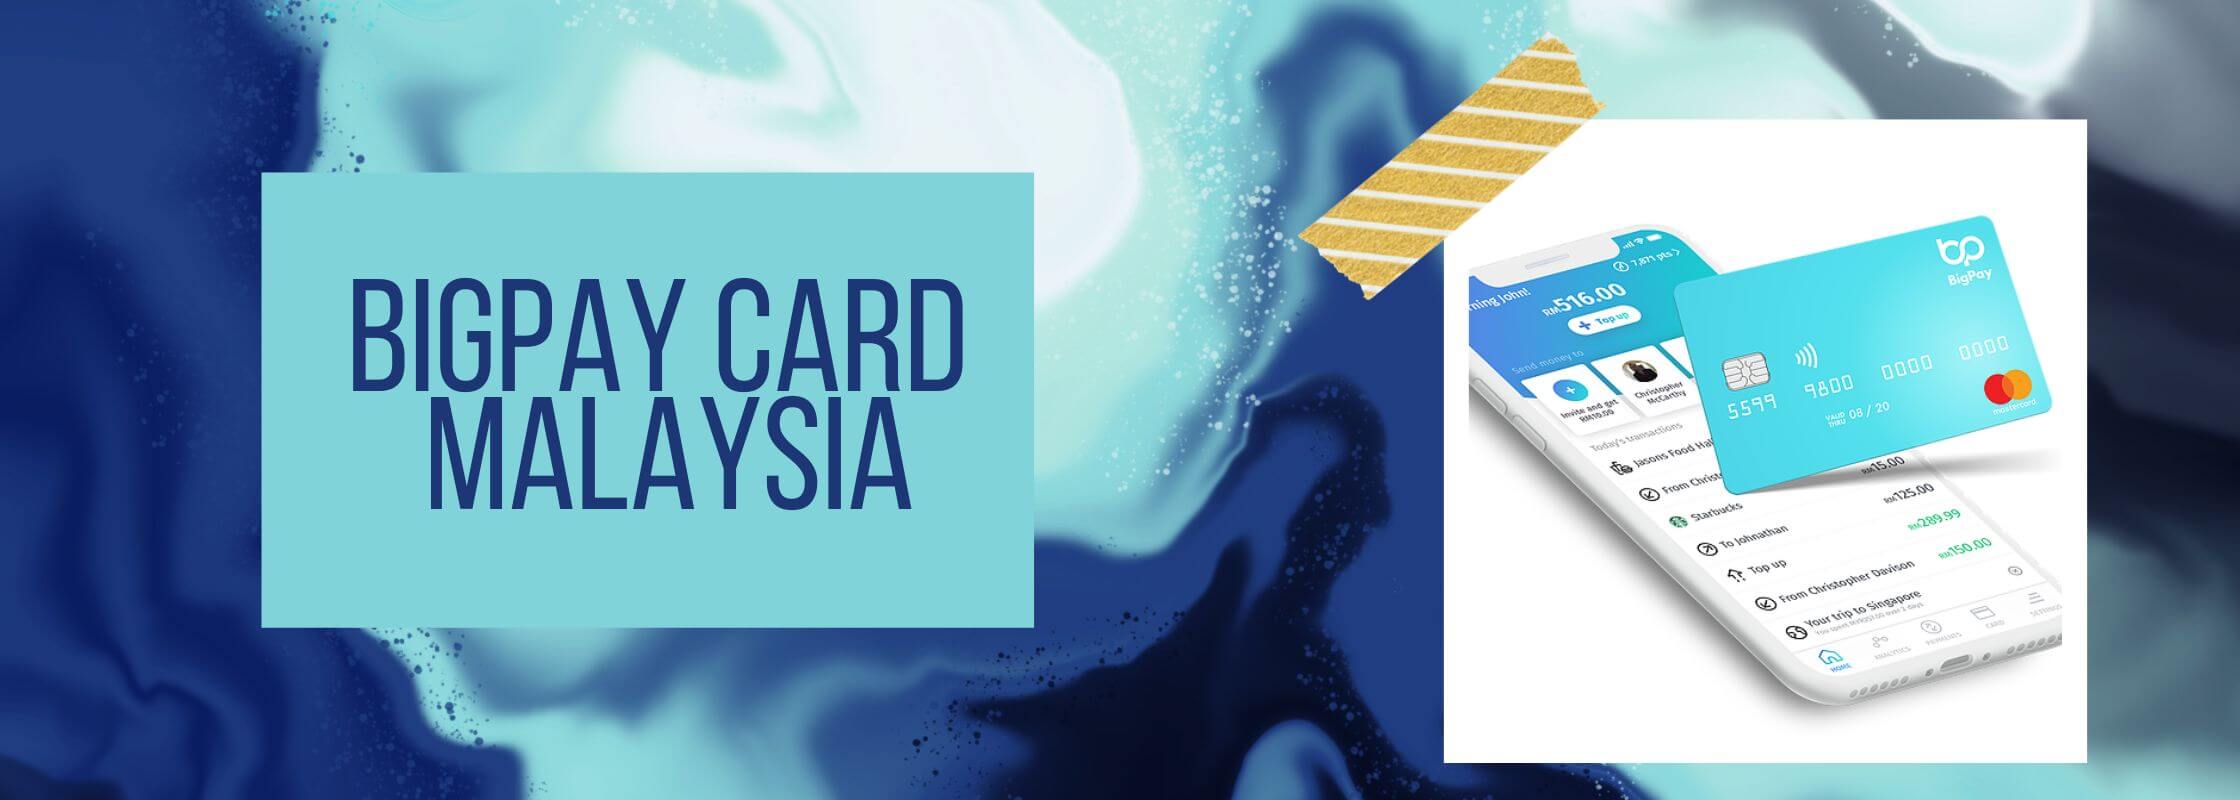 BIGPAY CARD MALAYSIA